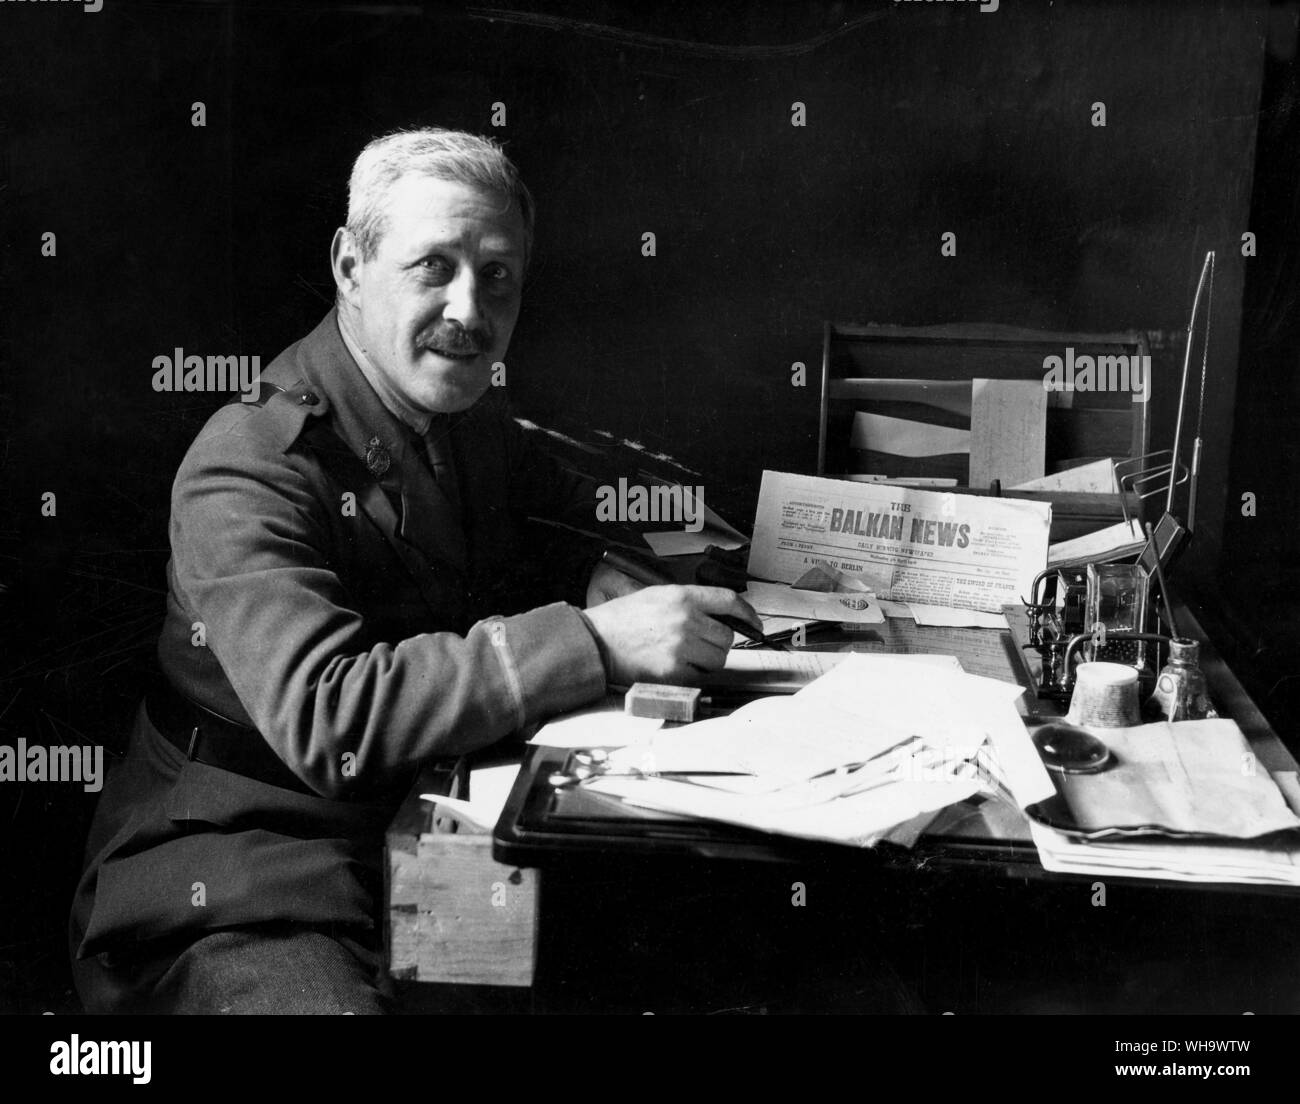 WW1/der Balkan. Leutnant Kinross, der Romancier, im Editorial der Vorsitzende der Balkan News. Das Papier hatte eine grosse Verbreitung unter den verbündeten Truppen. Stockfoto